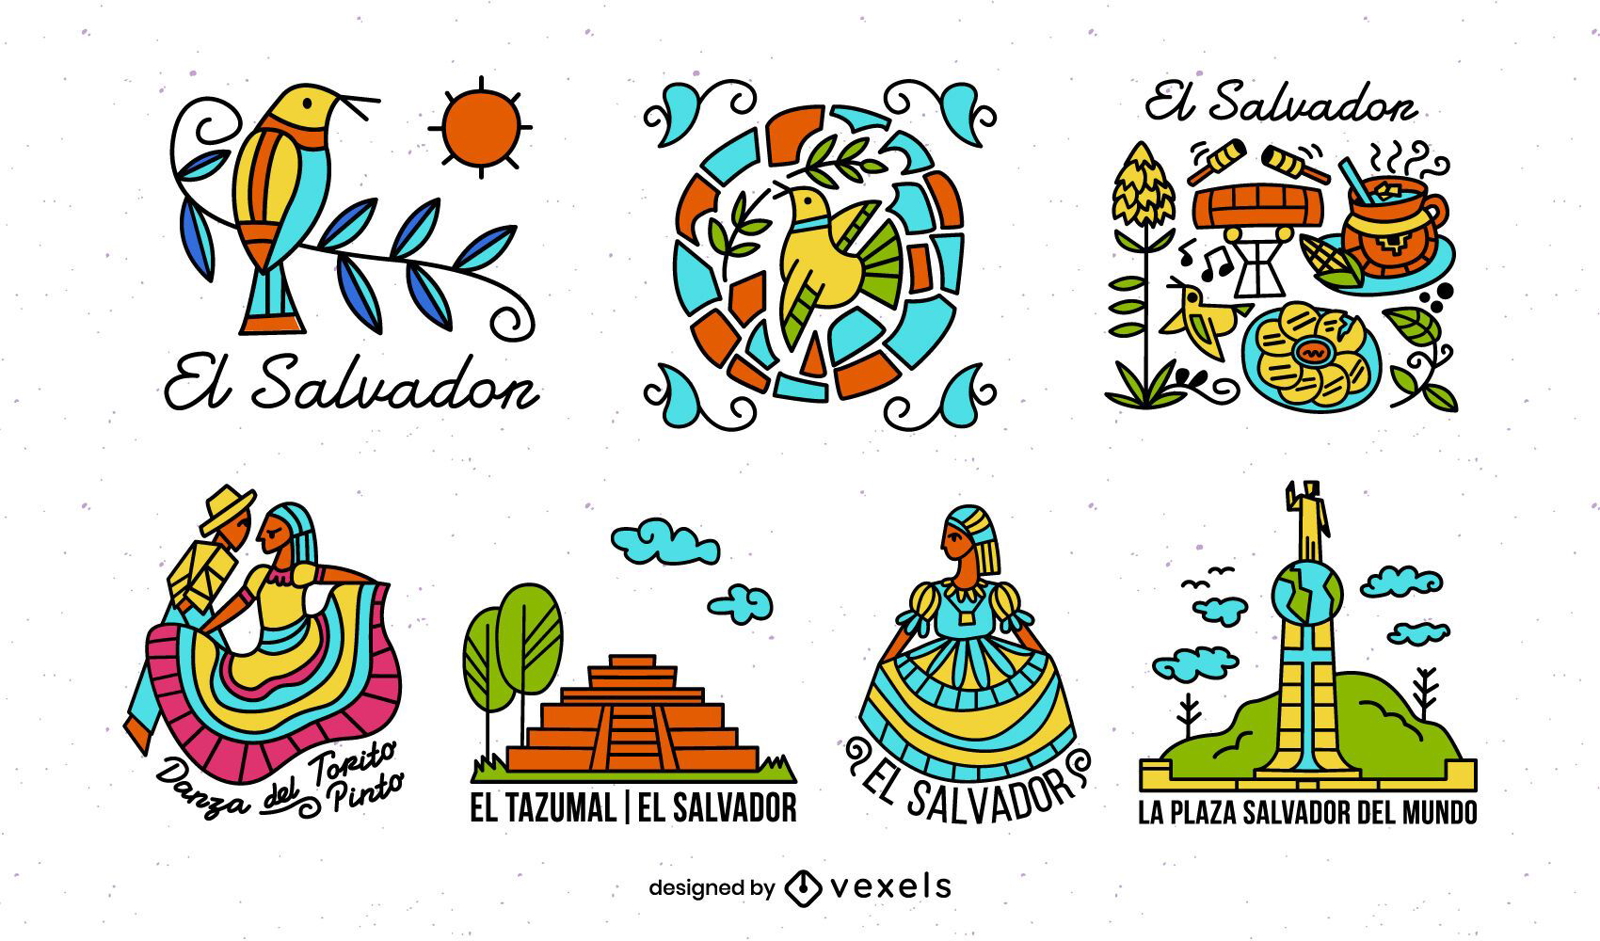 Pacote de elementos ilustrados coloridos de El Salvador